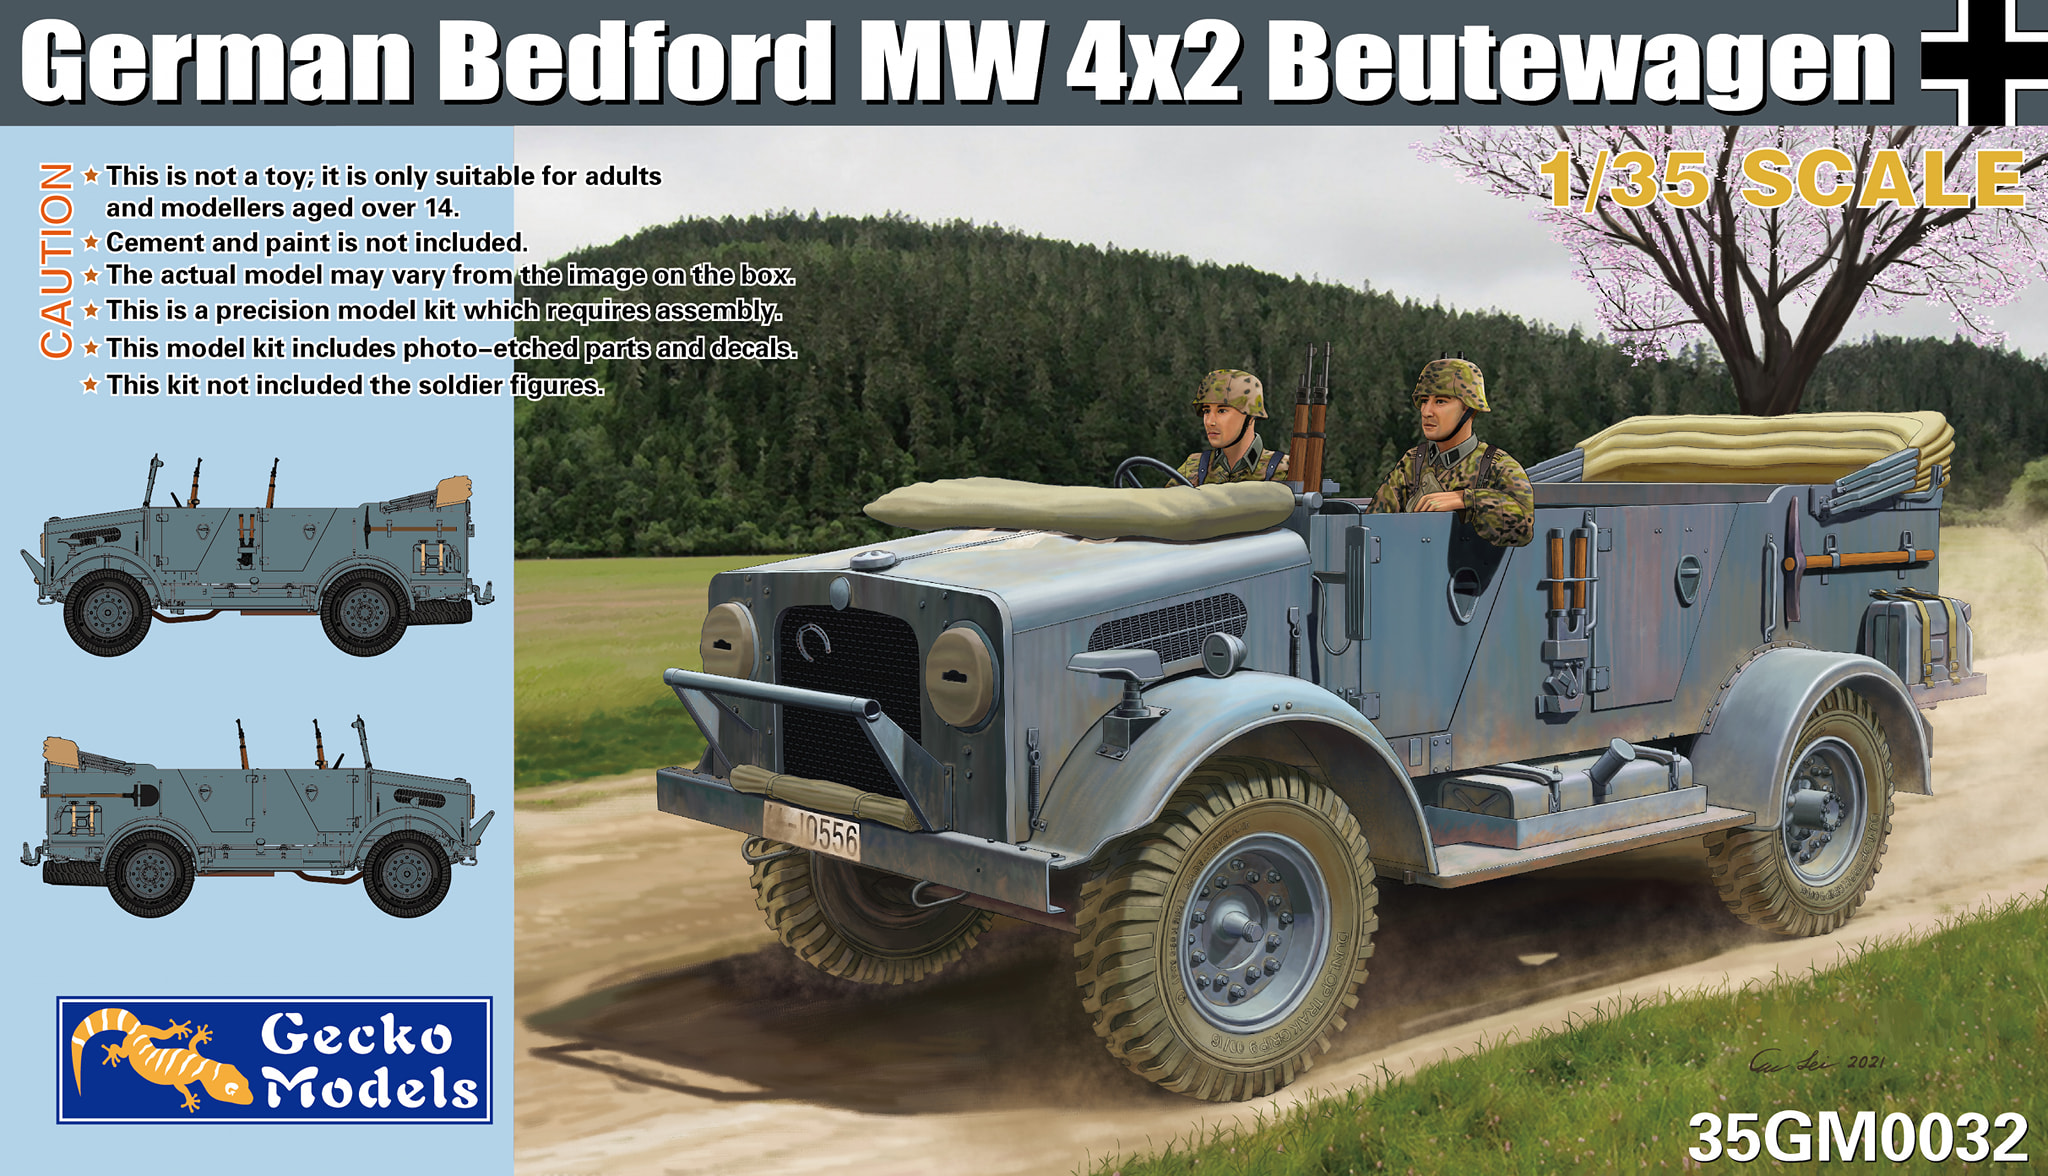 1/35 ドイツ軍 ベッドフォード MW 4 x 2 鹵獲車輛